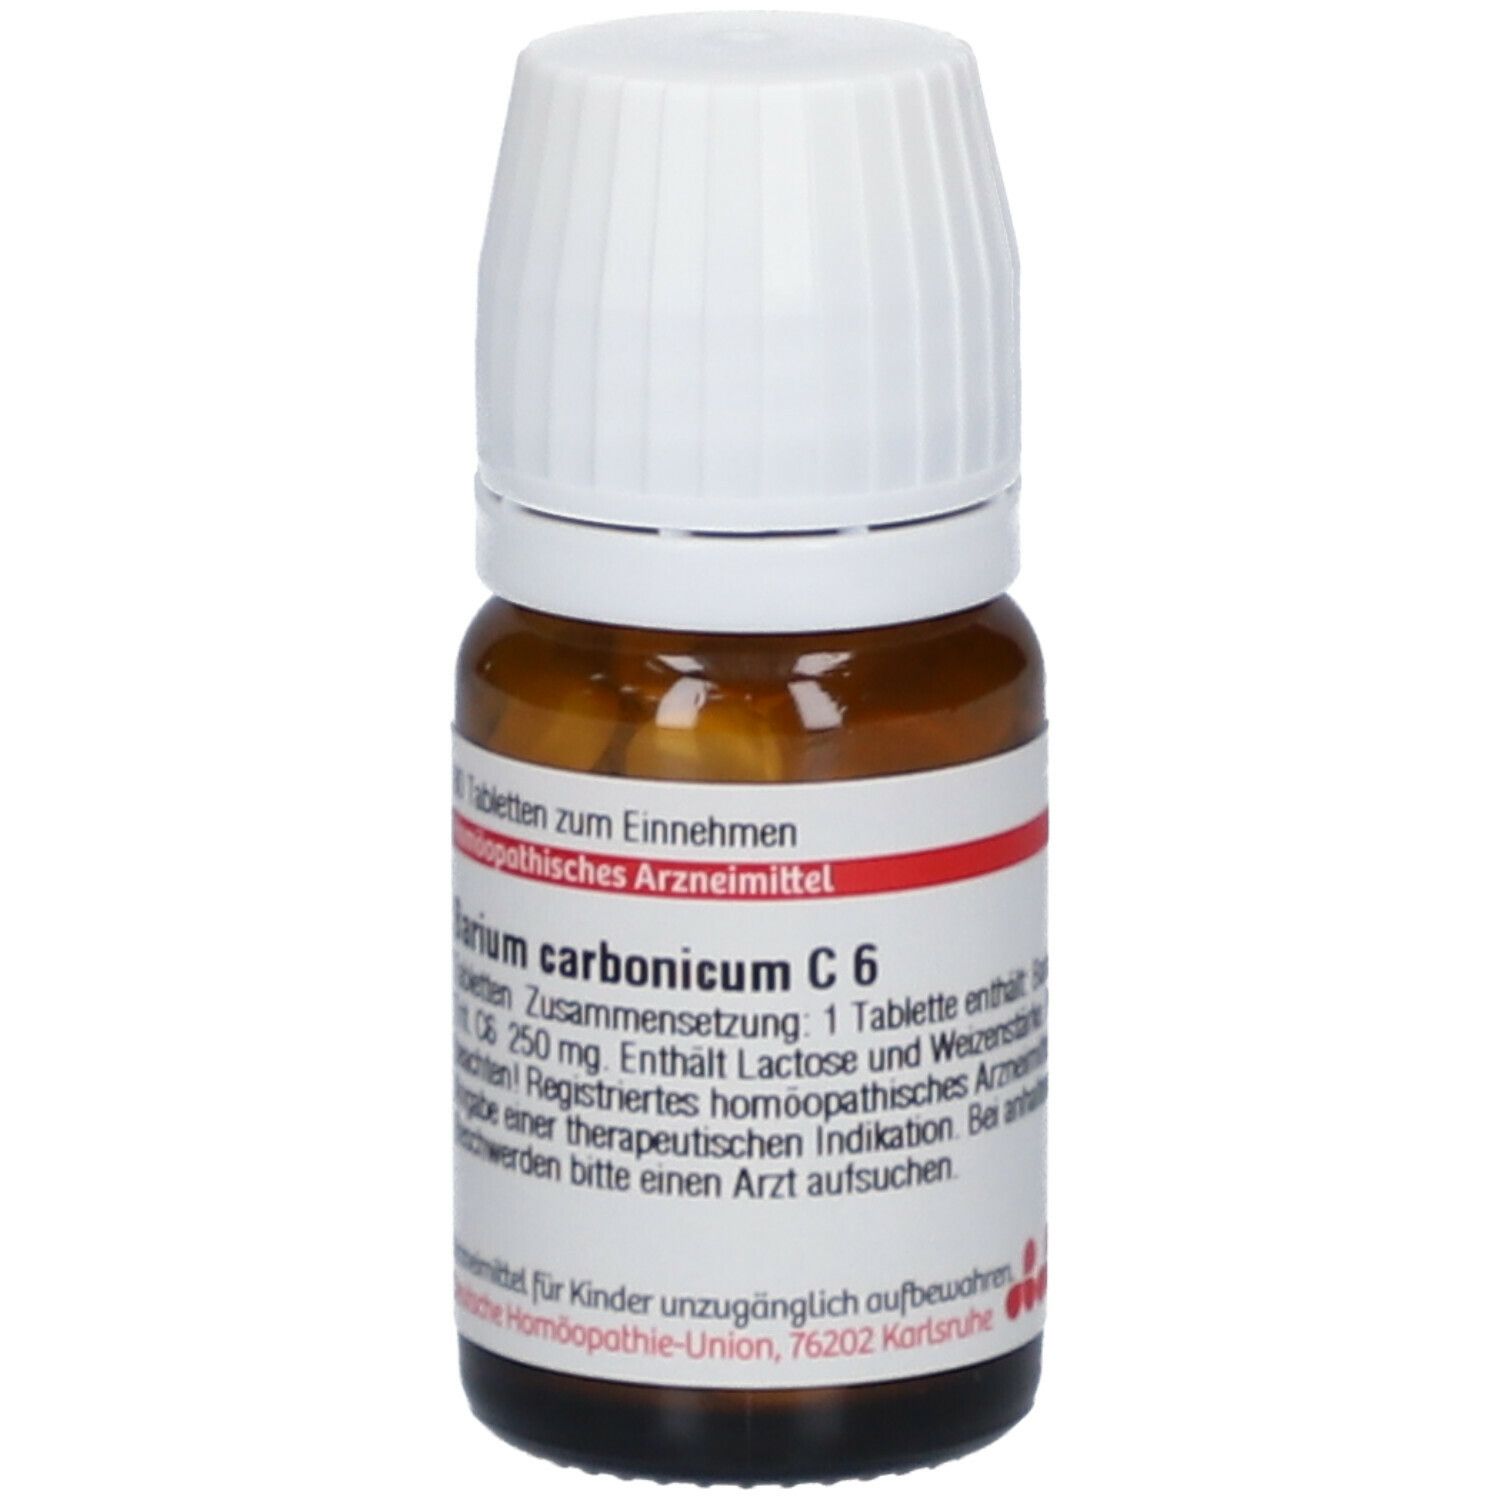 DHU Barium Carbonicum C6